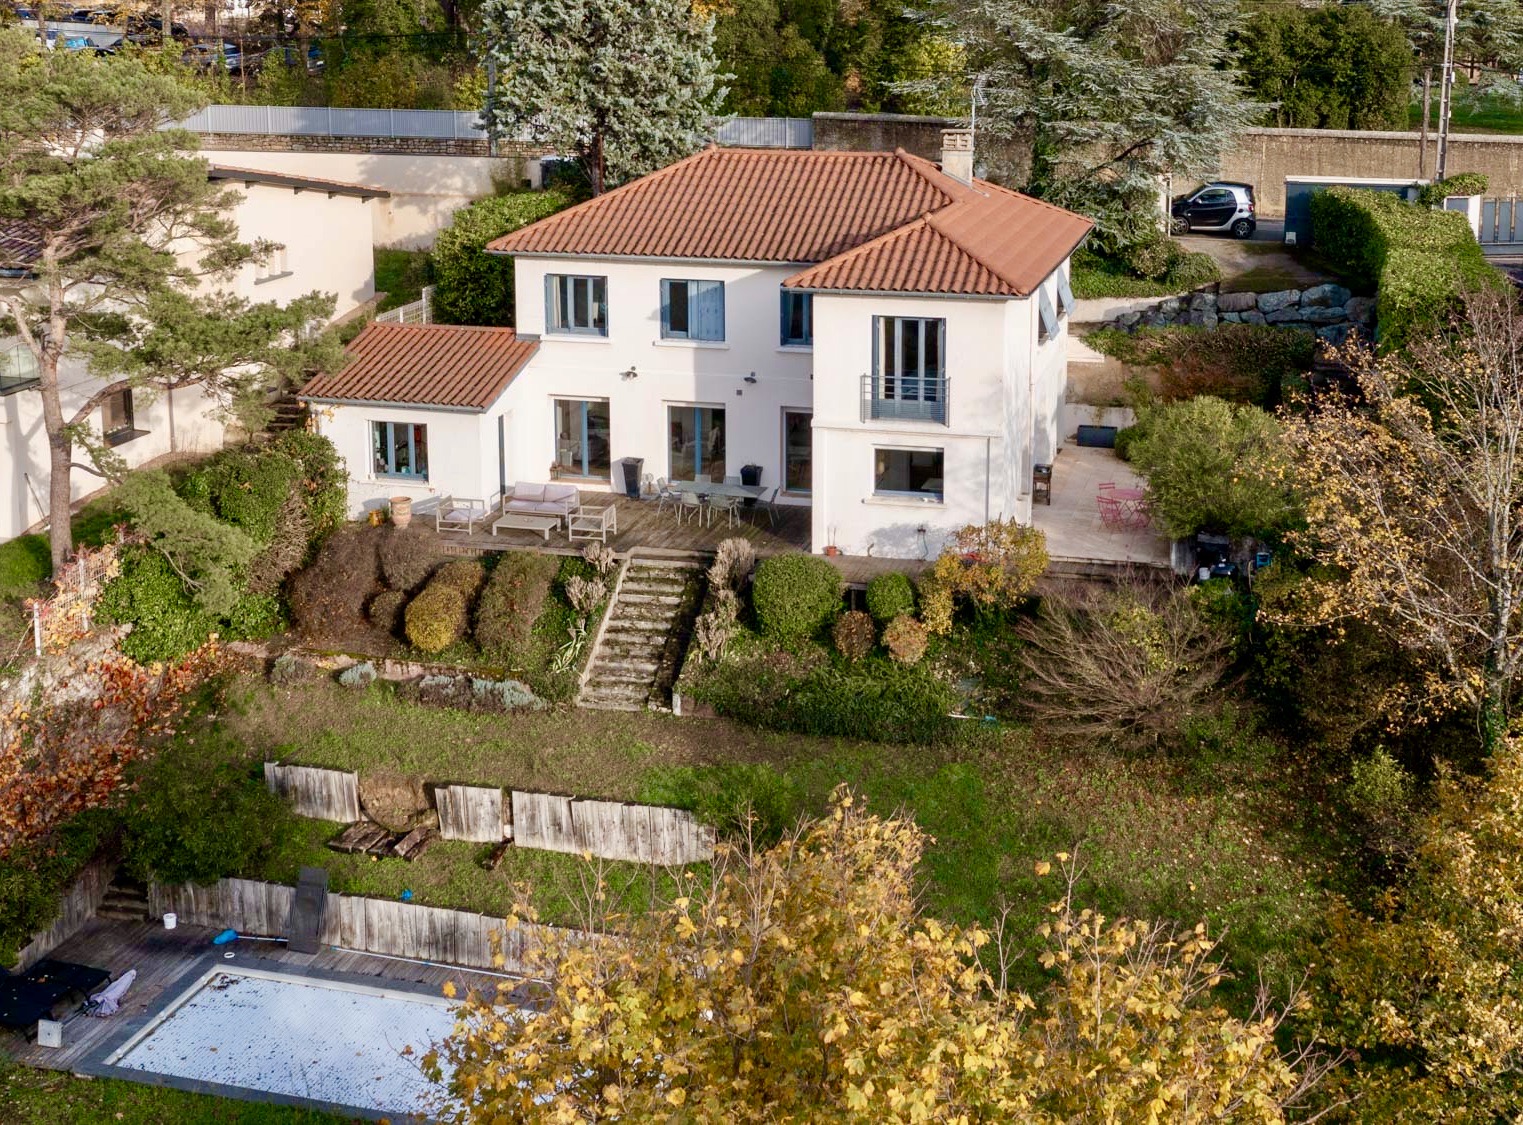 St Cyr au Mont d’Or – Belle maison des années 50 avec parc arboré, piscine et vue panoramique sur les collines